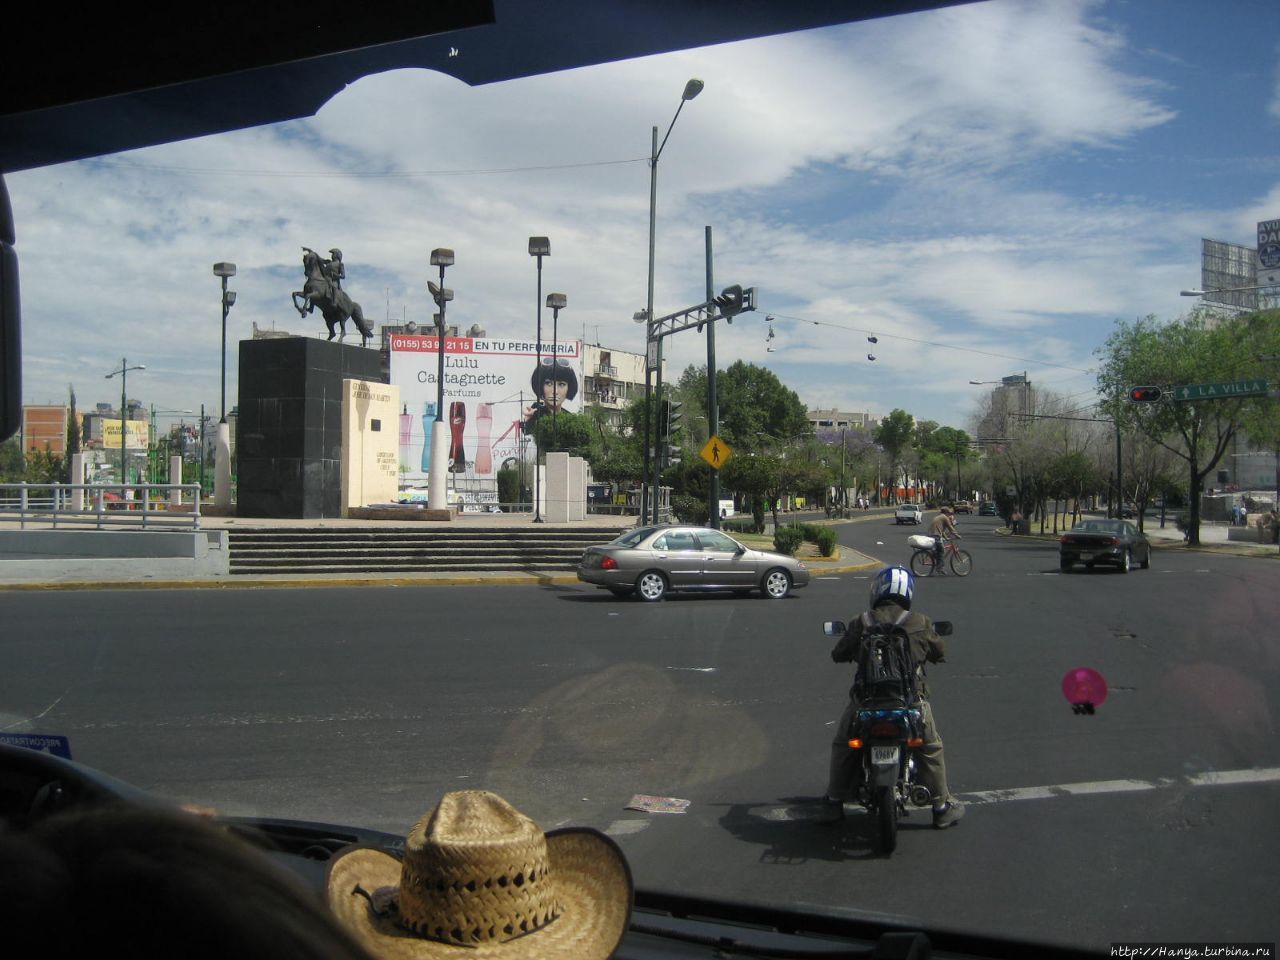 Конный памятник генералу Хосе де Сан-Мартину (Monumento a José de San Martin) Мехико, Мексика